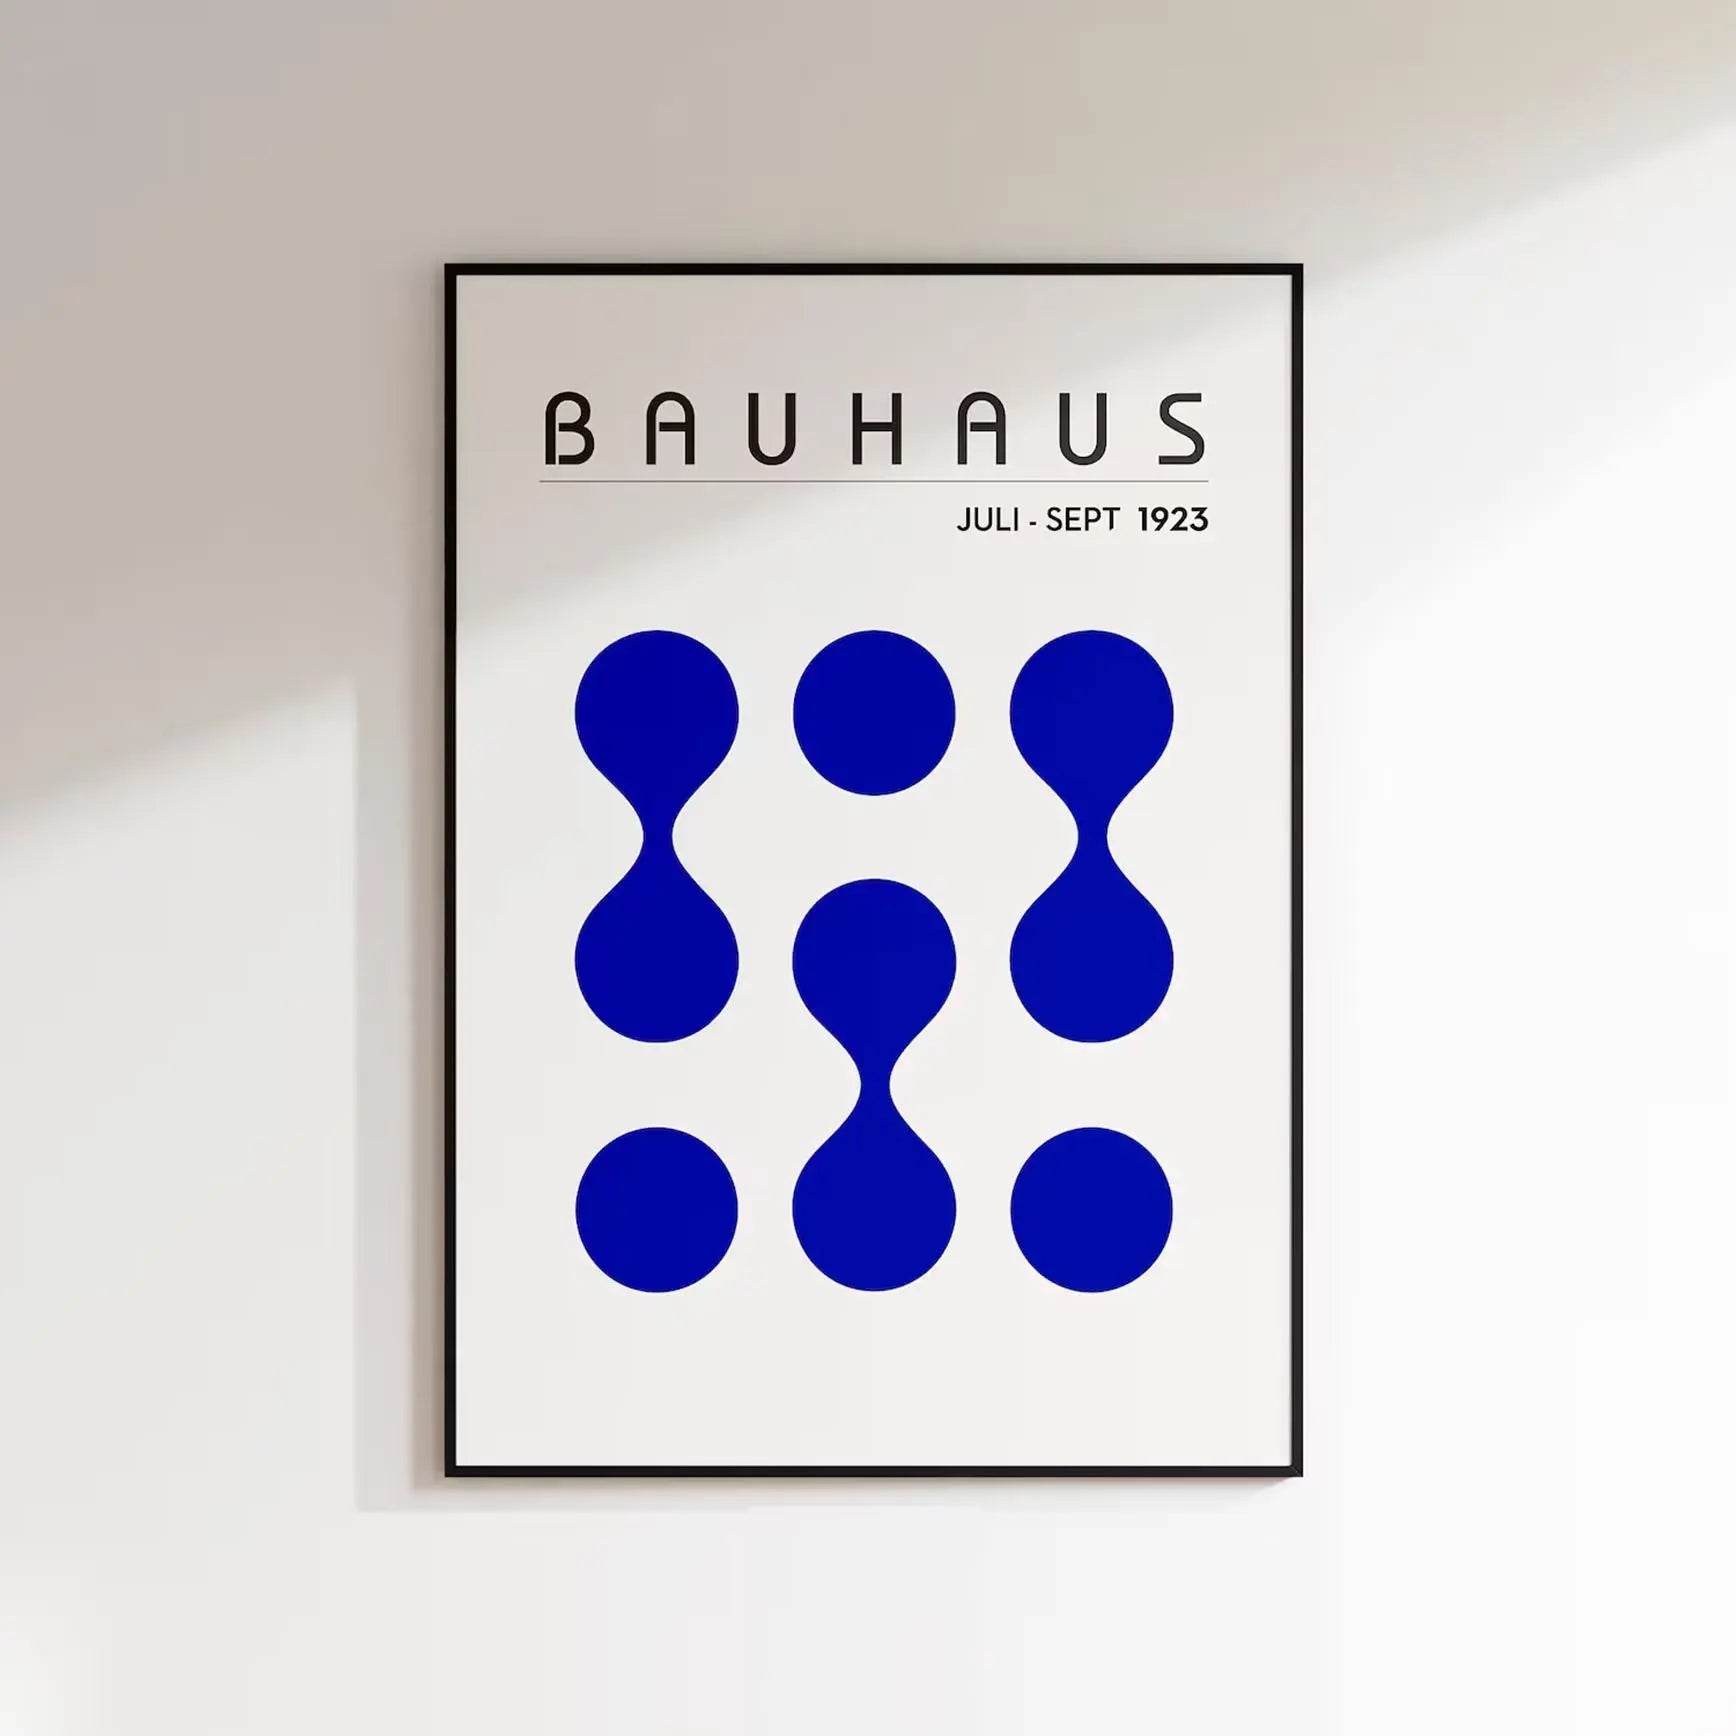 Bauhaus Juli-Sept 1923